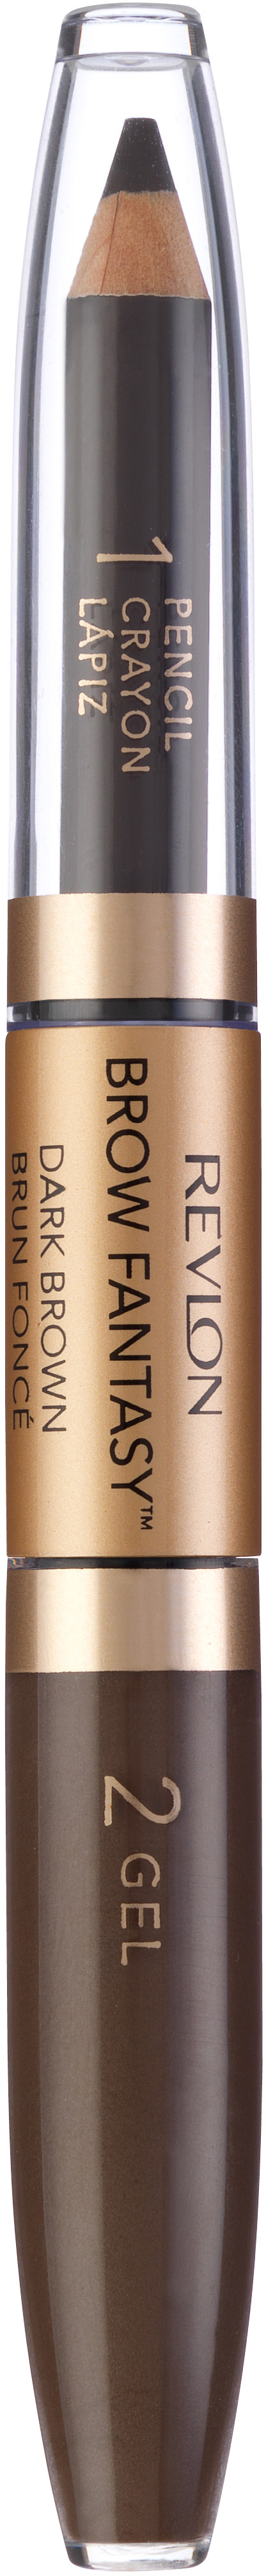 Revlon Cosmetics Brow Fantasy Duo Gel & Pencil 4 Brown